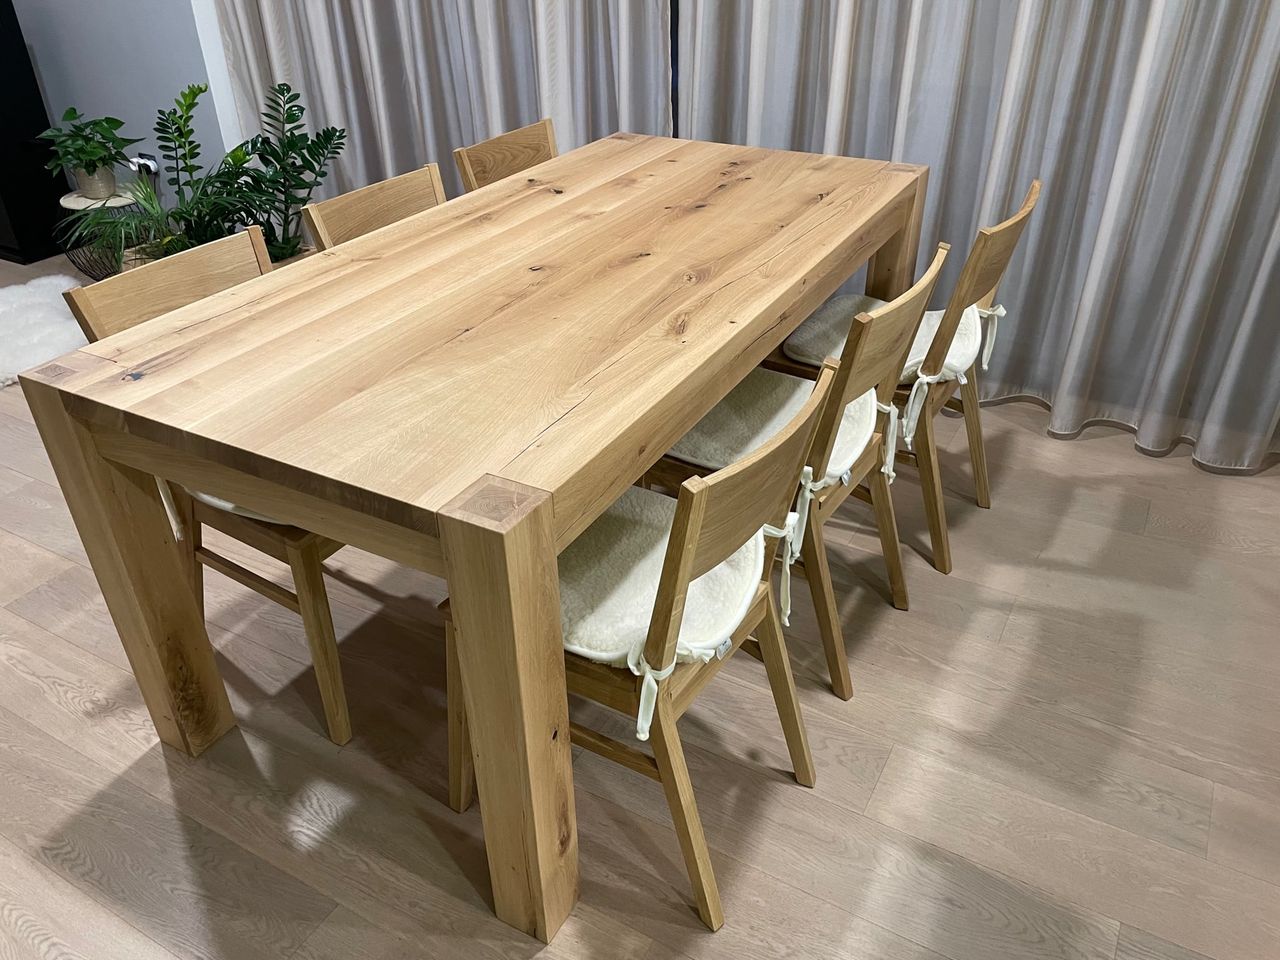 Celodrevený dubový stôl na mieru